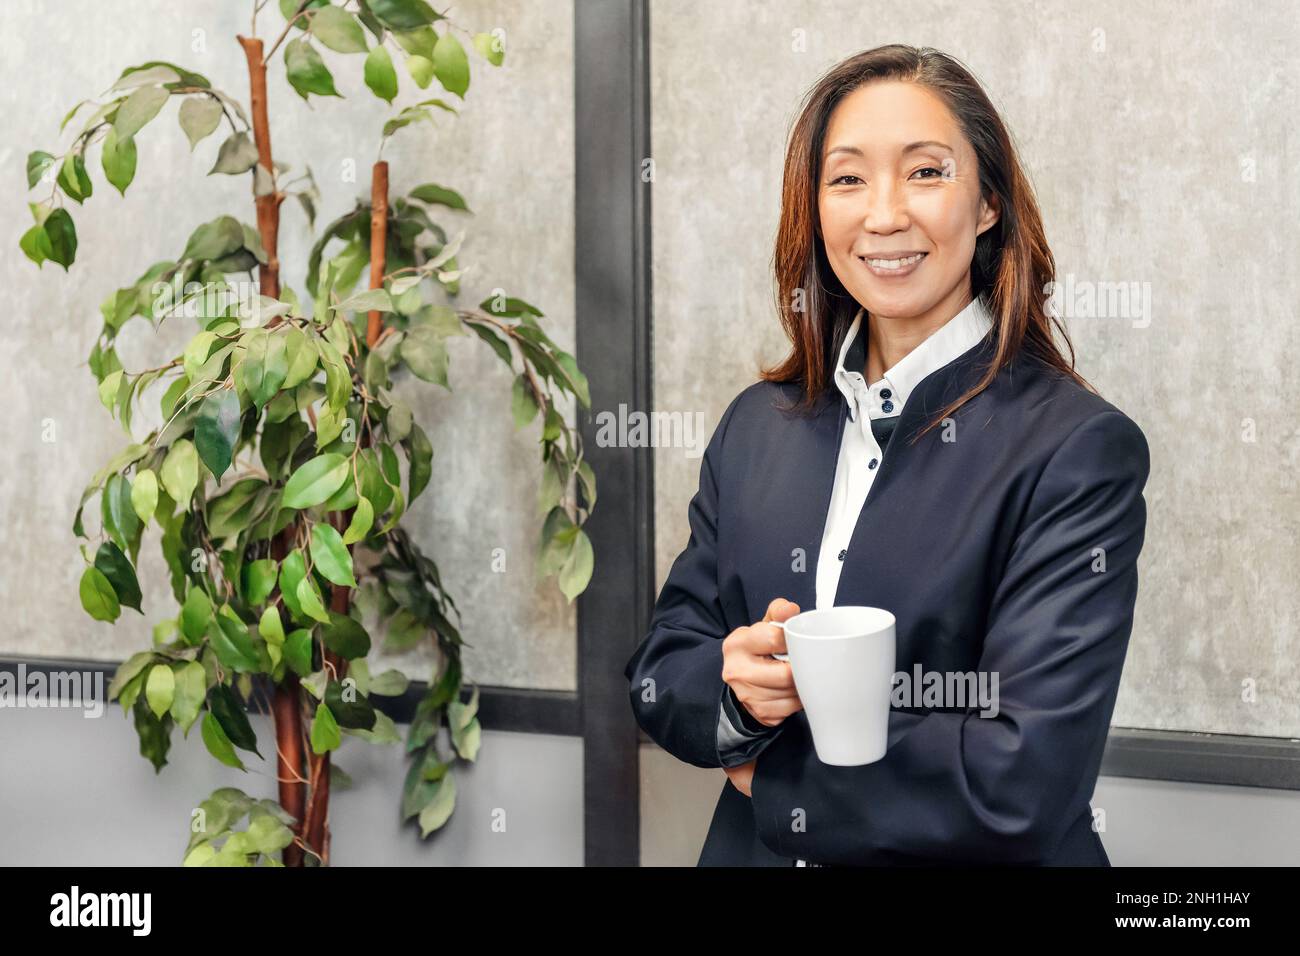 Porträt einer positiven erwachsenen, ethnischen Unternehmerin im formellen Anzug, stehend mit einer Tasse heißes Getränk neben einem Topfbaum und schauend in die Kamera Stockfoto